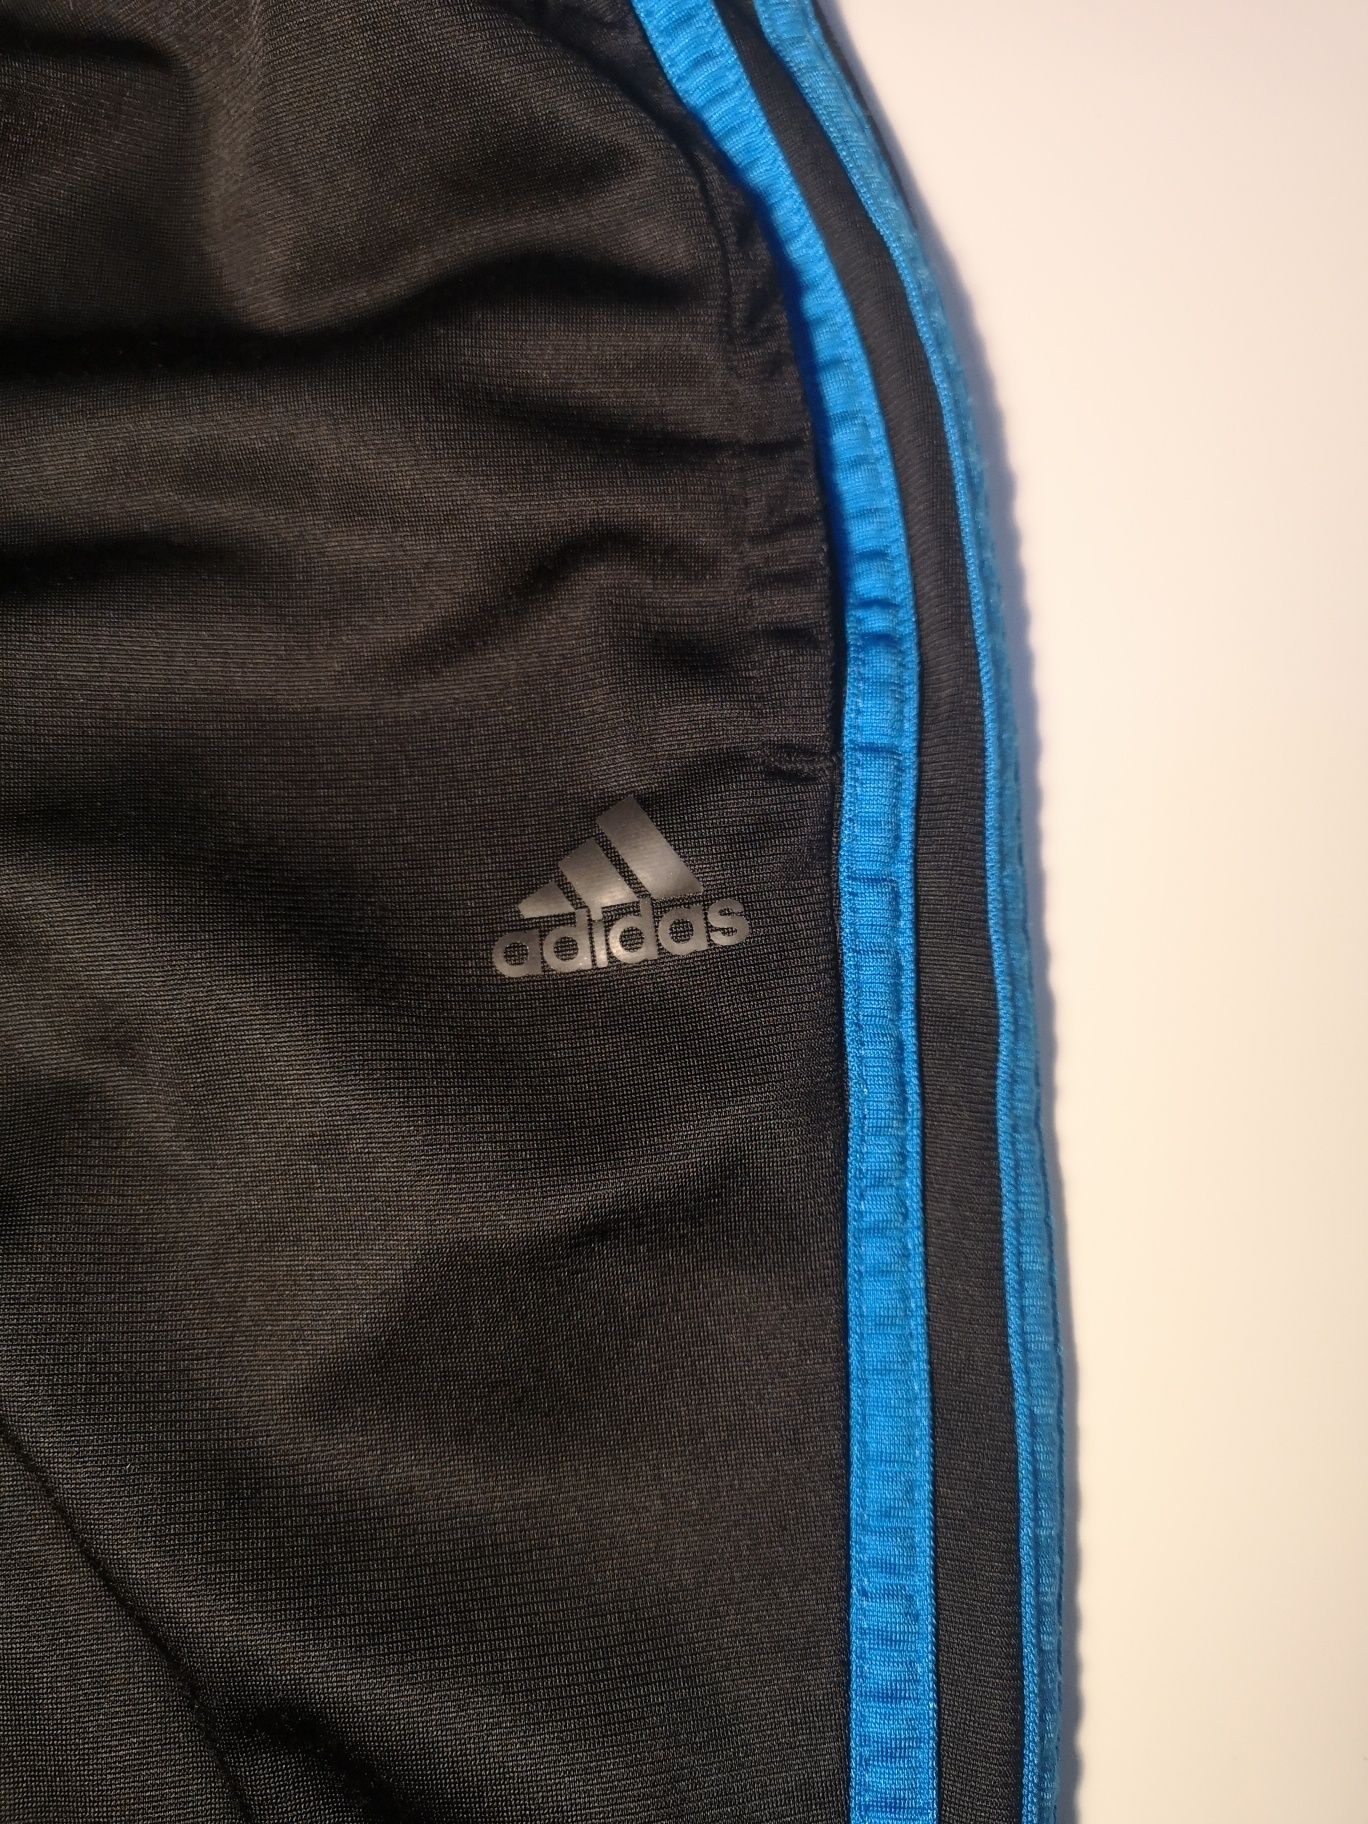 Adidas spodnie dresy sportowe roz.152/158/146 treningowe biegowe